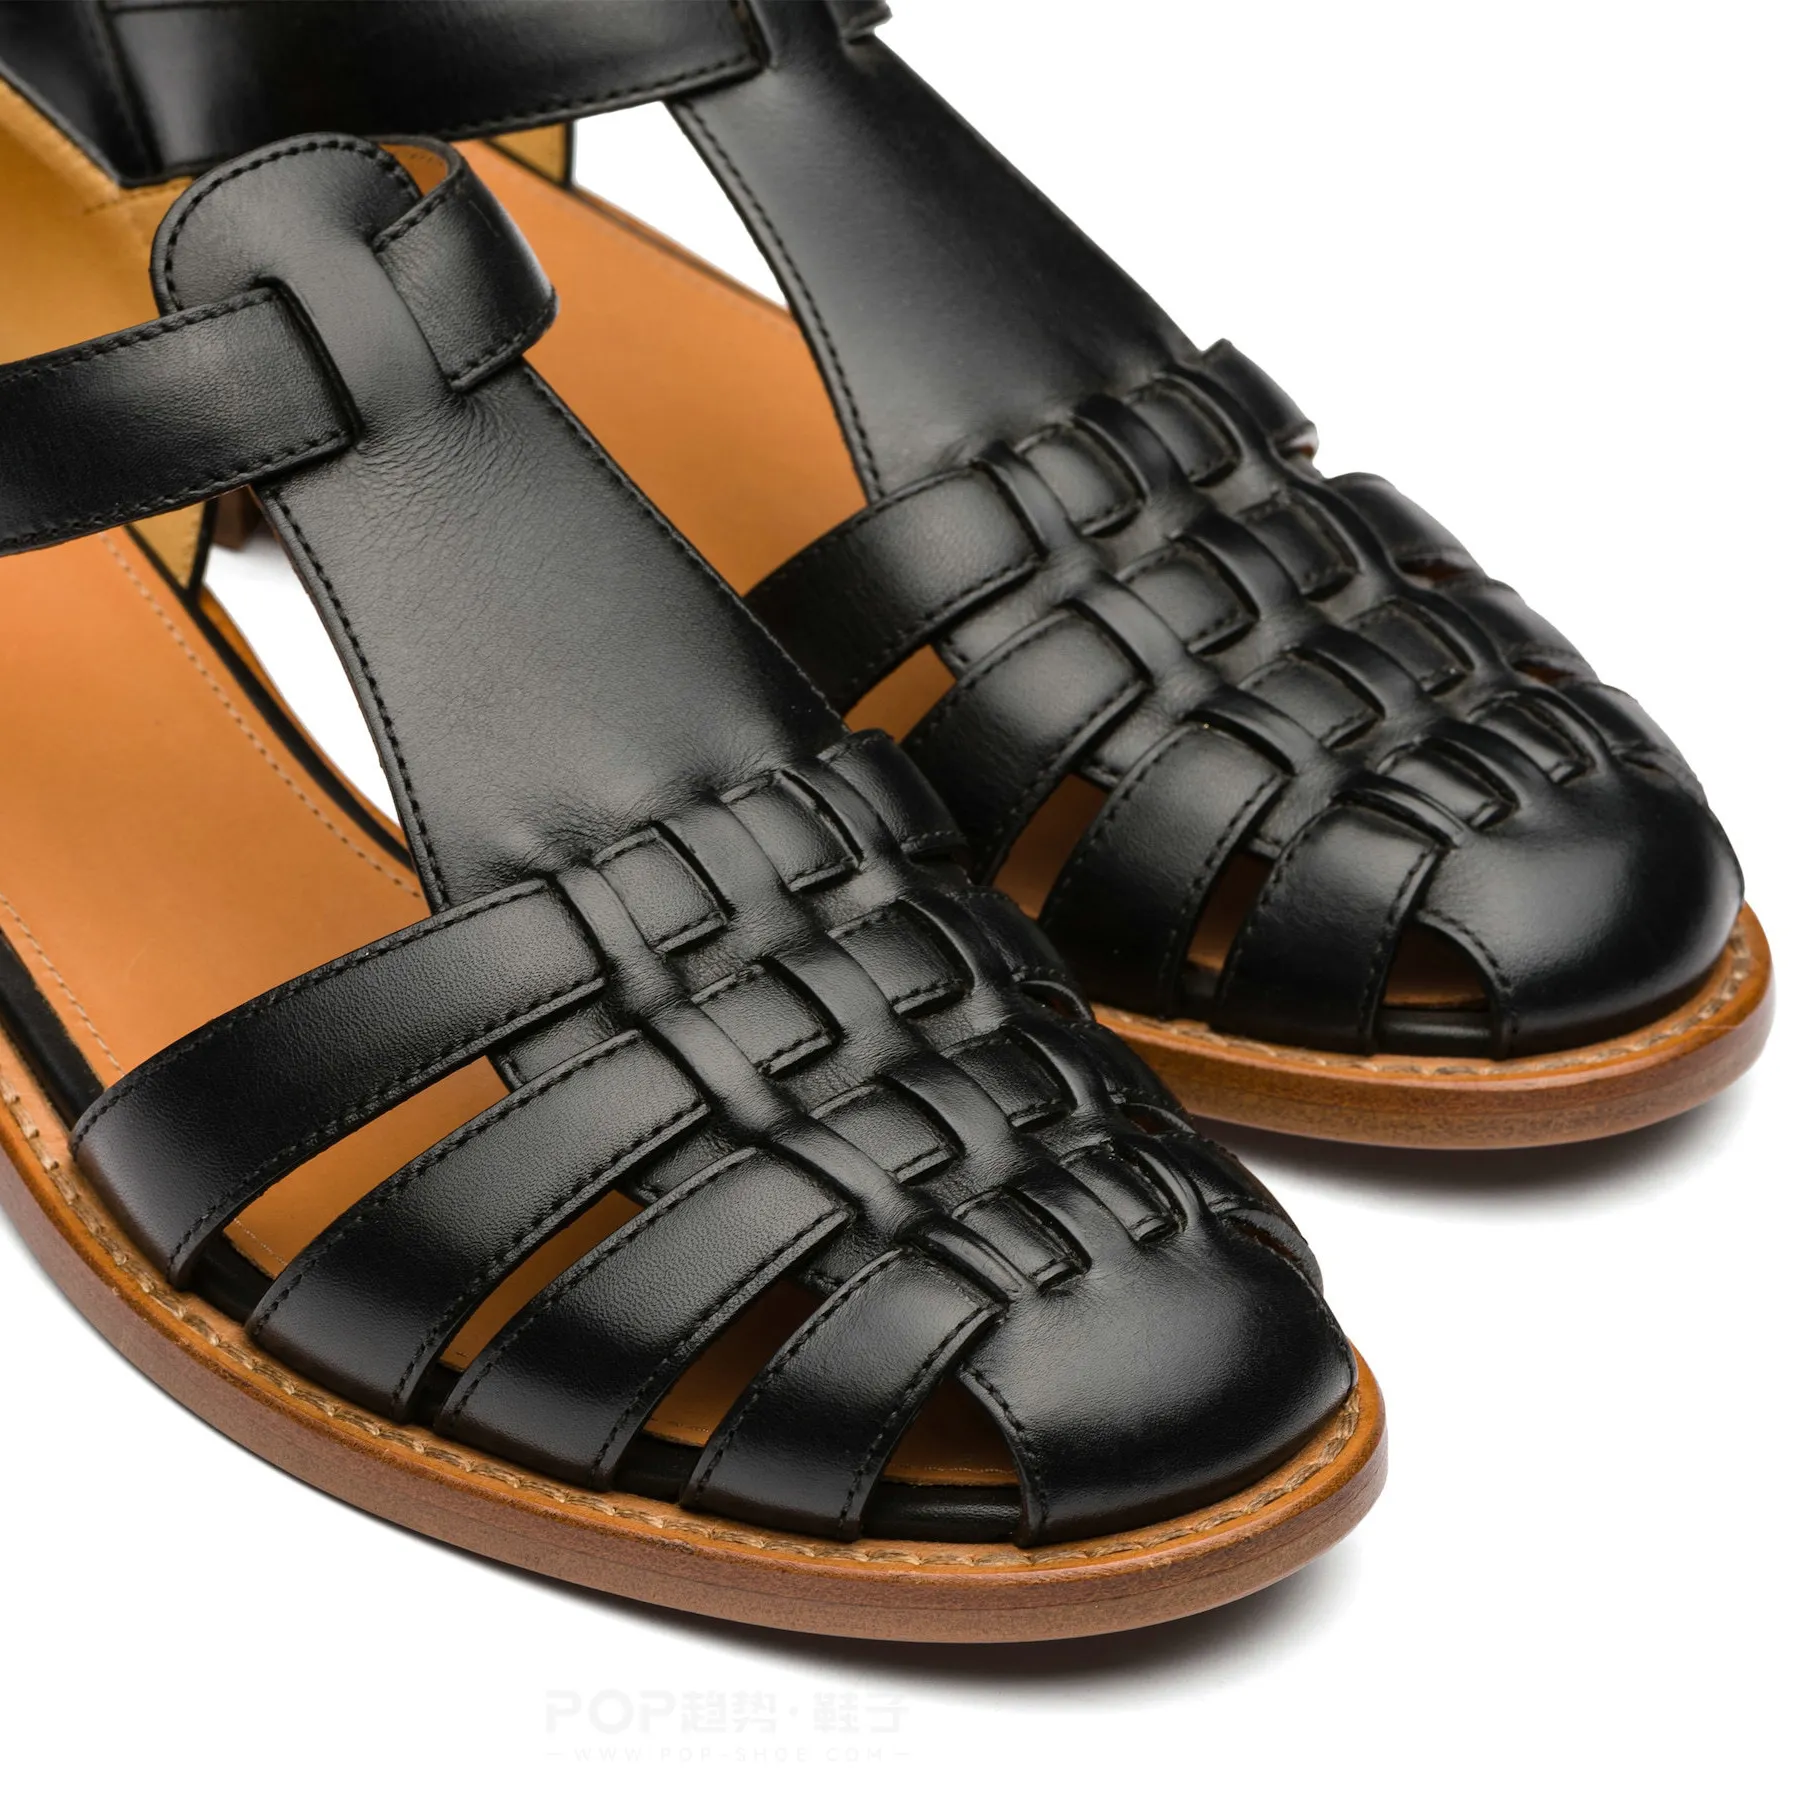 OEM/ODM correa de tobillo ajustable diseño calidad cuero superior moda Casual suela de goma Sandalias planas de mujer